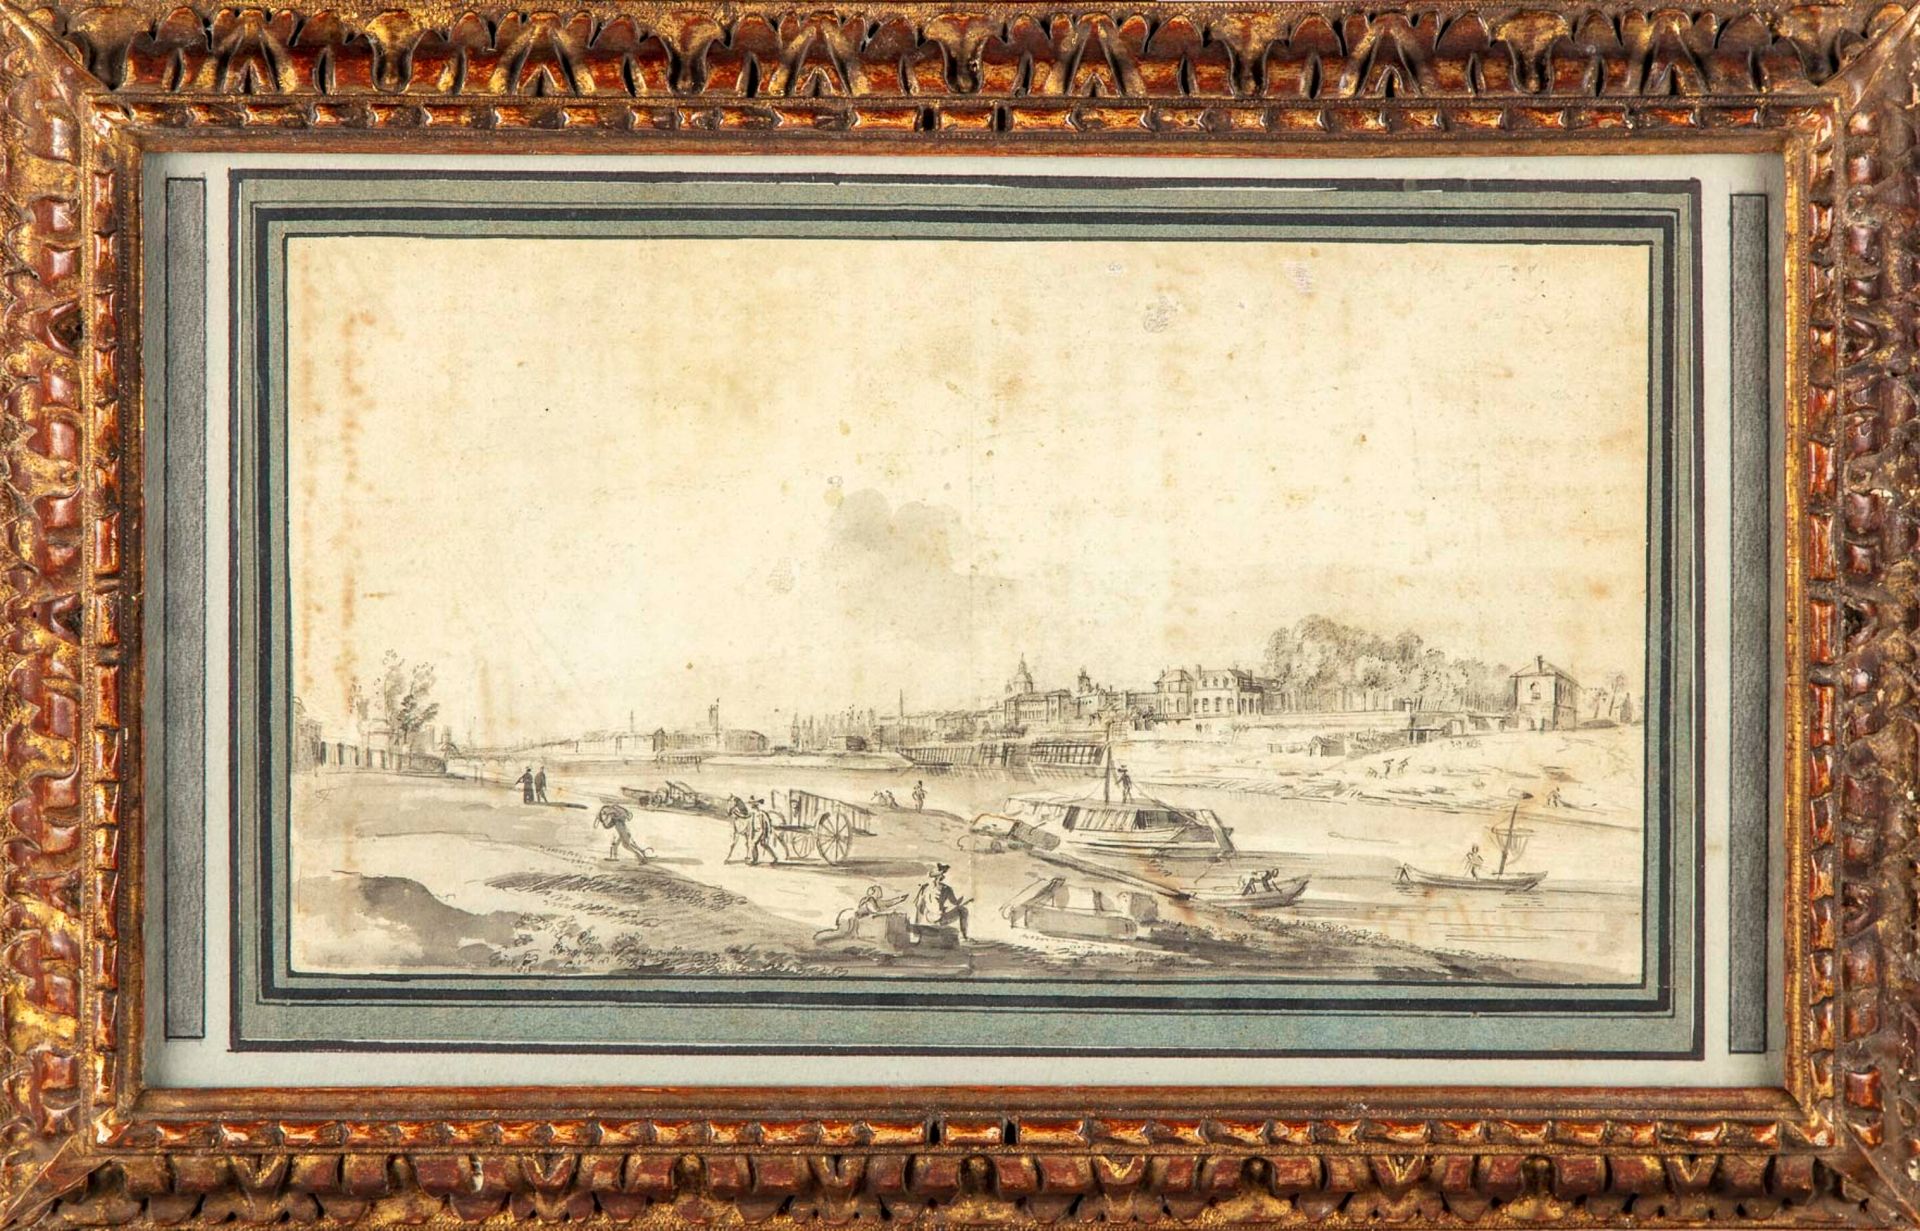 ECOLE FRANCAISE XVIIIè SCUOLA FRANCESE del XVIII secolo

Riva animata del fiume
&hellip;